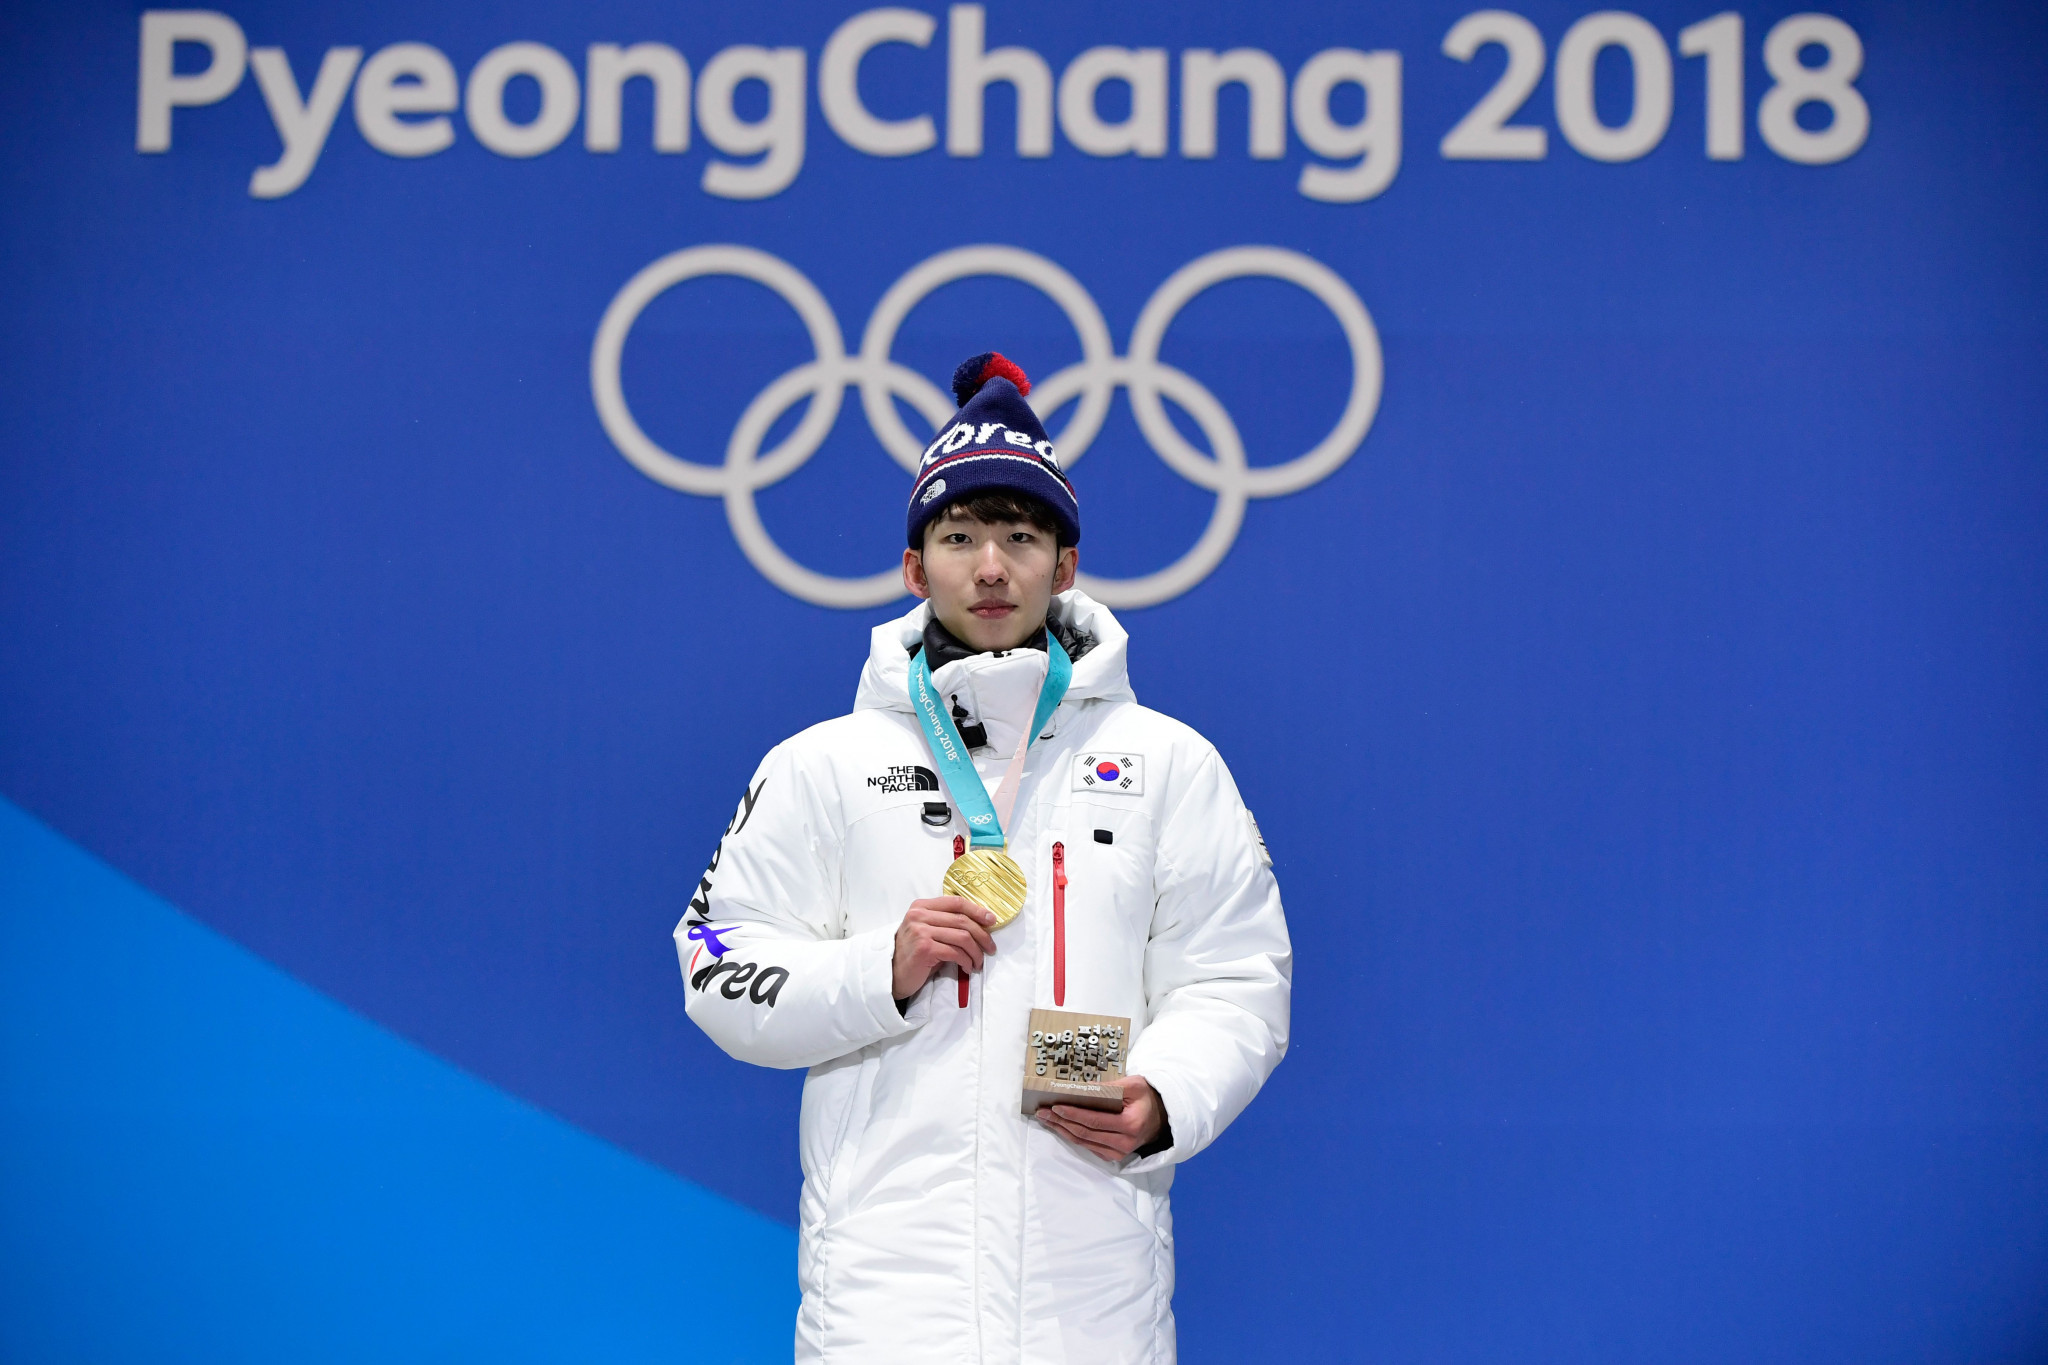 Lim Hyo-jun won 1,500m short track speed skating gold at Pyeongchang 2018 for South Korea ©Getty Images